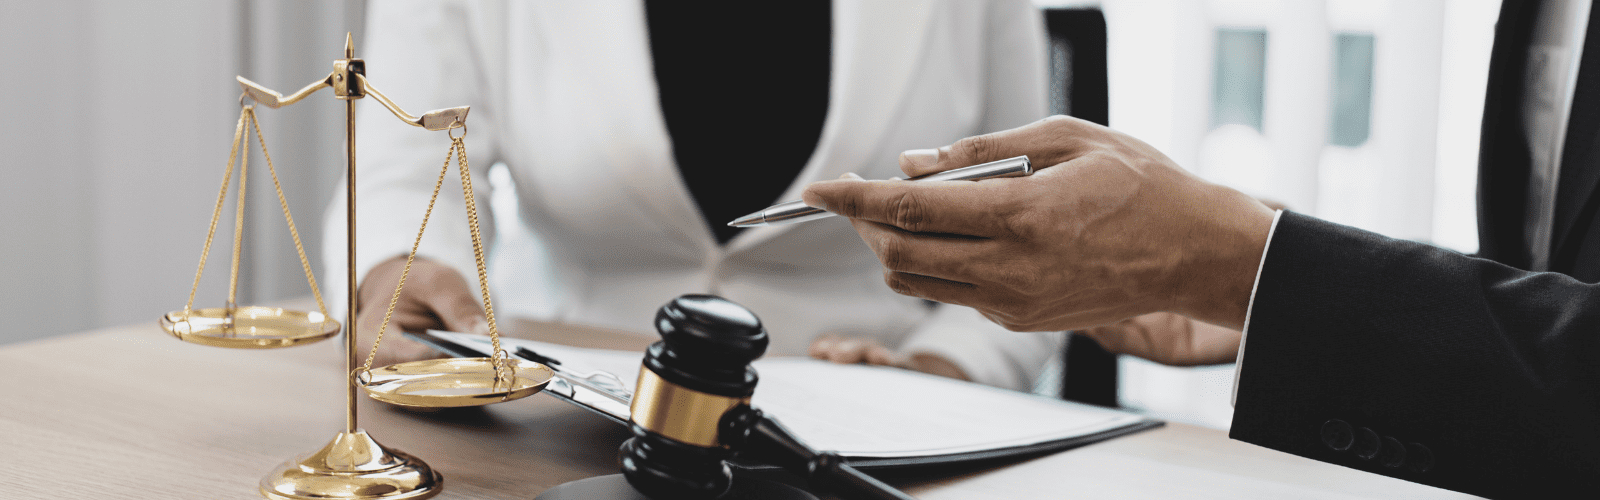 Singapore Private Client Legal Services